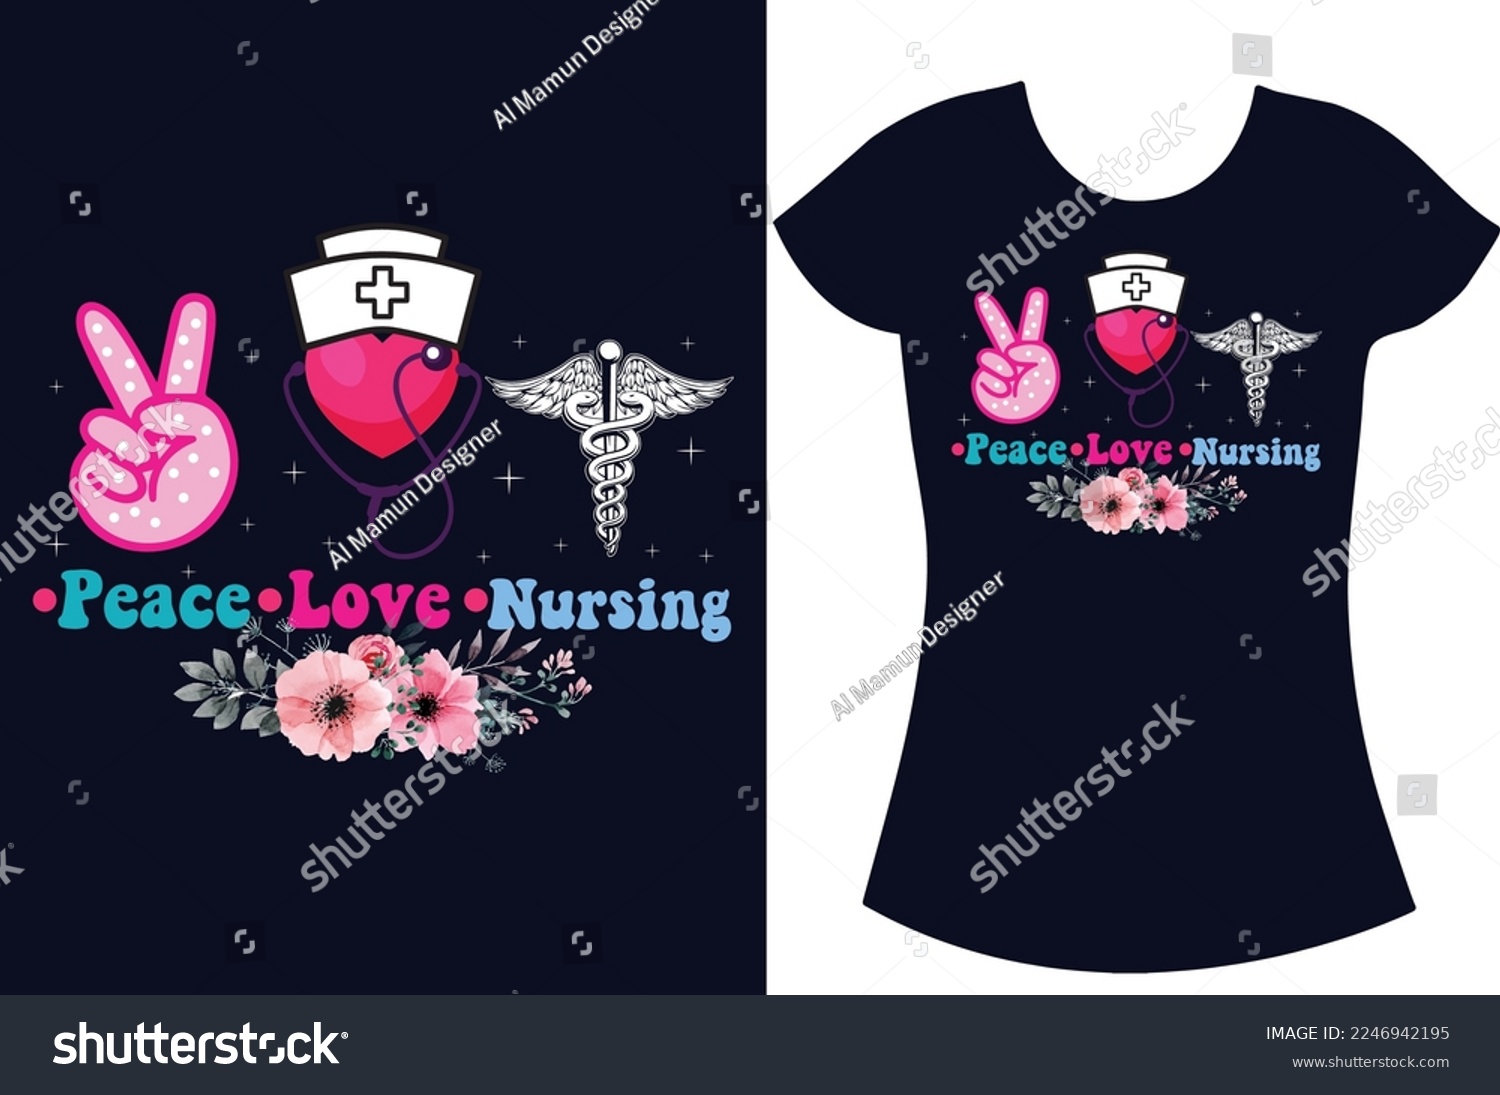 SVG of Nurse SVG typography t shirt design.Nurse shirt design, Retired-nurse and school nurse t shirt gift design. svg